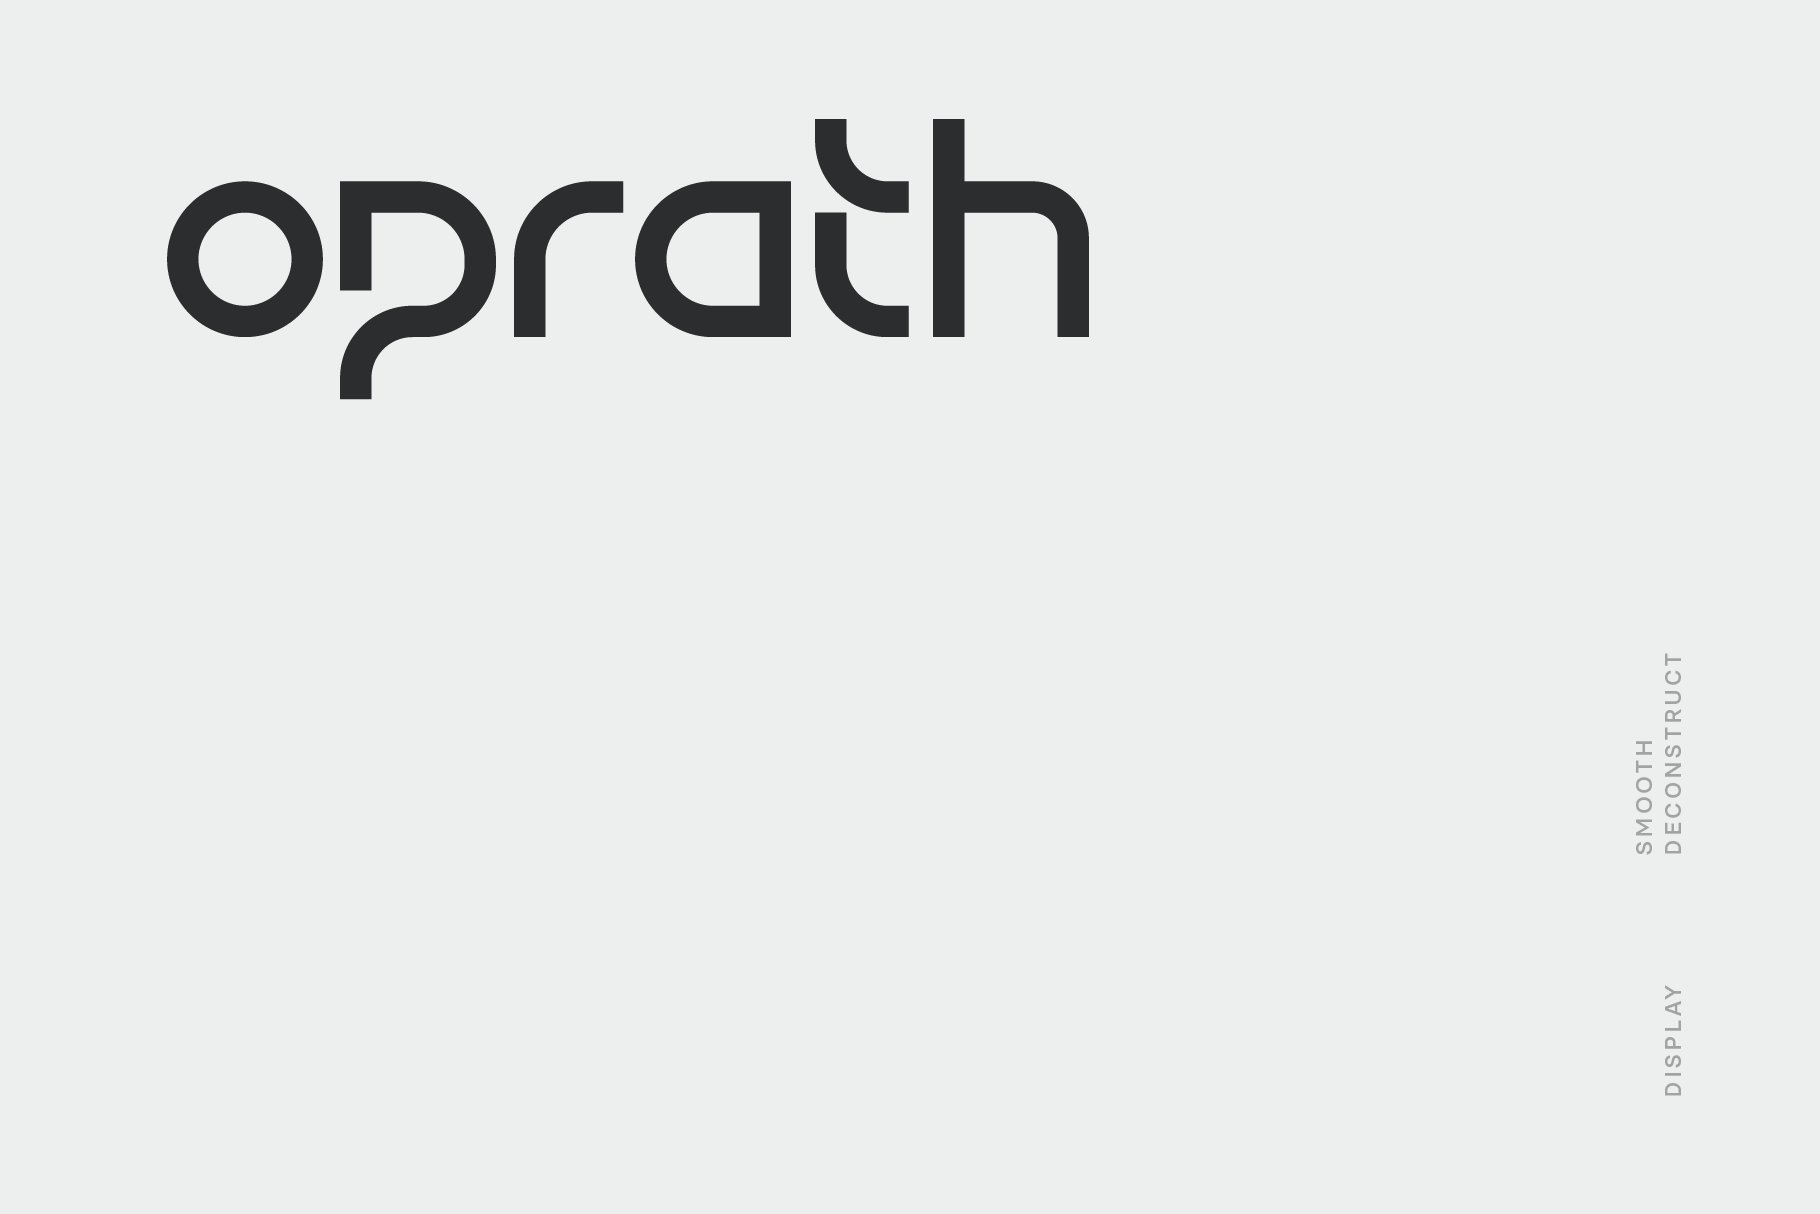 Oprath Font cover image.